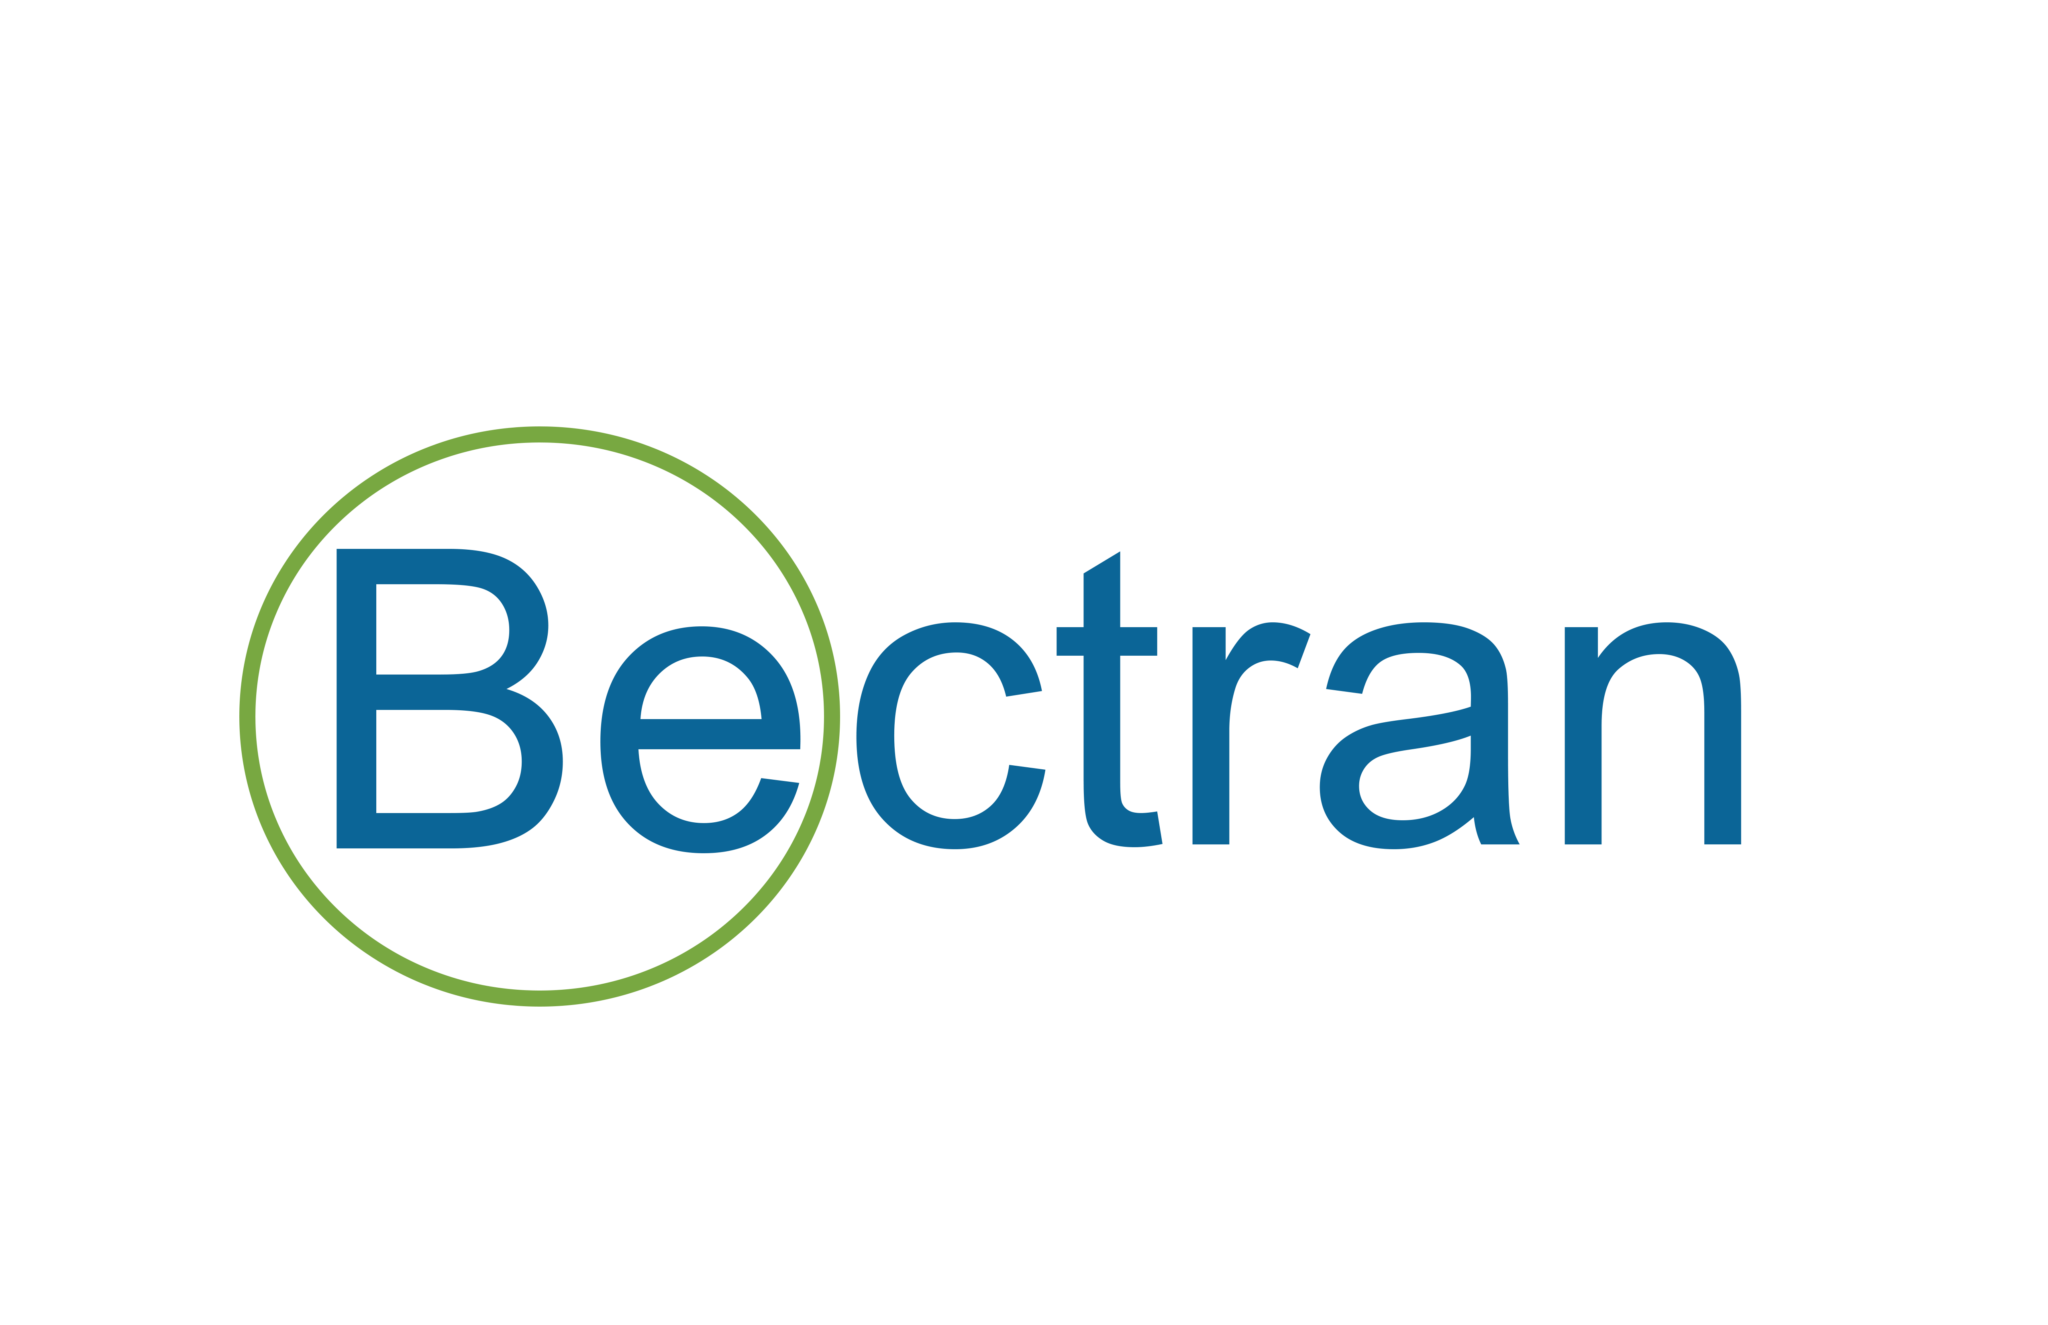 Bectran